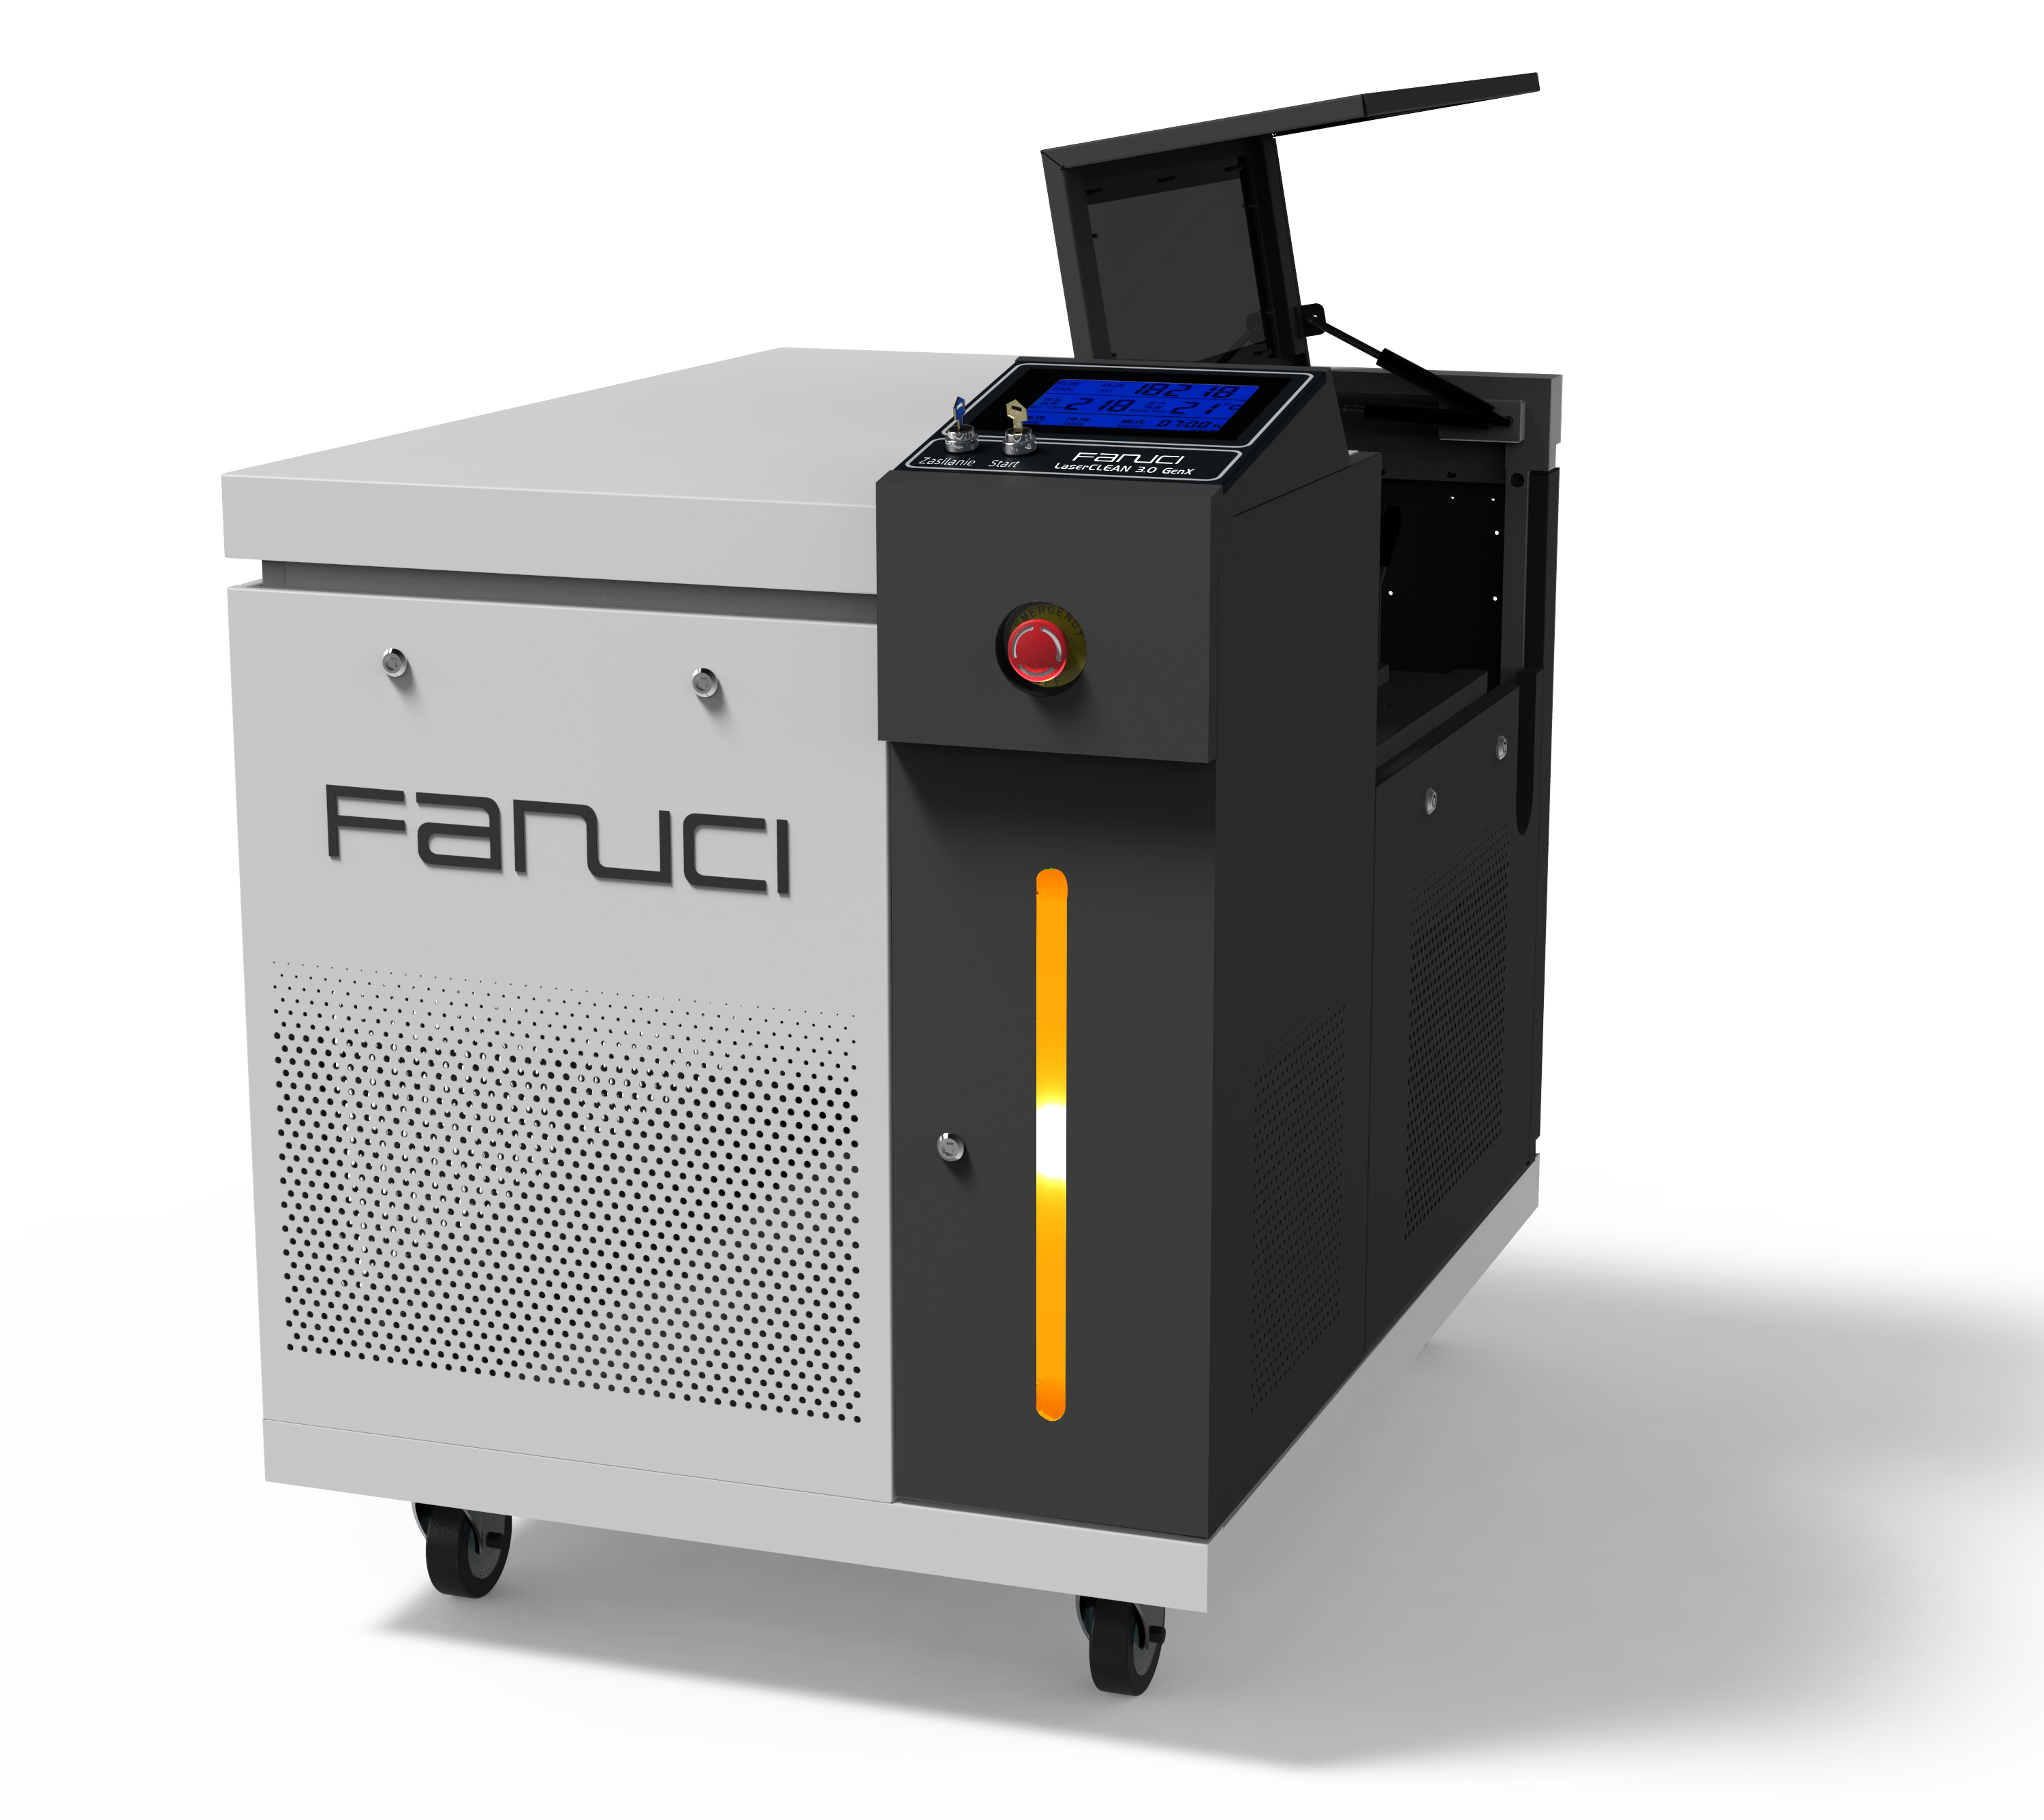 FANUCI® Pro Compact Lasersvetsmaskin fyra i en kommer att skickas till Europa